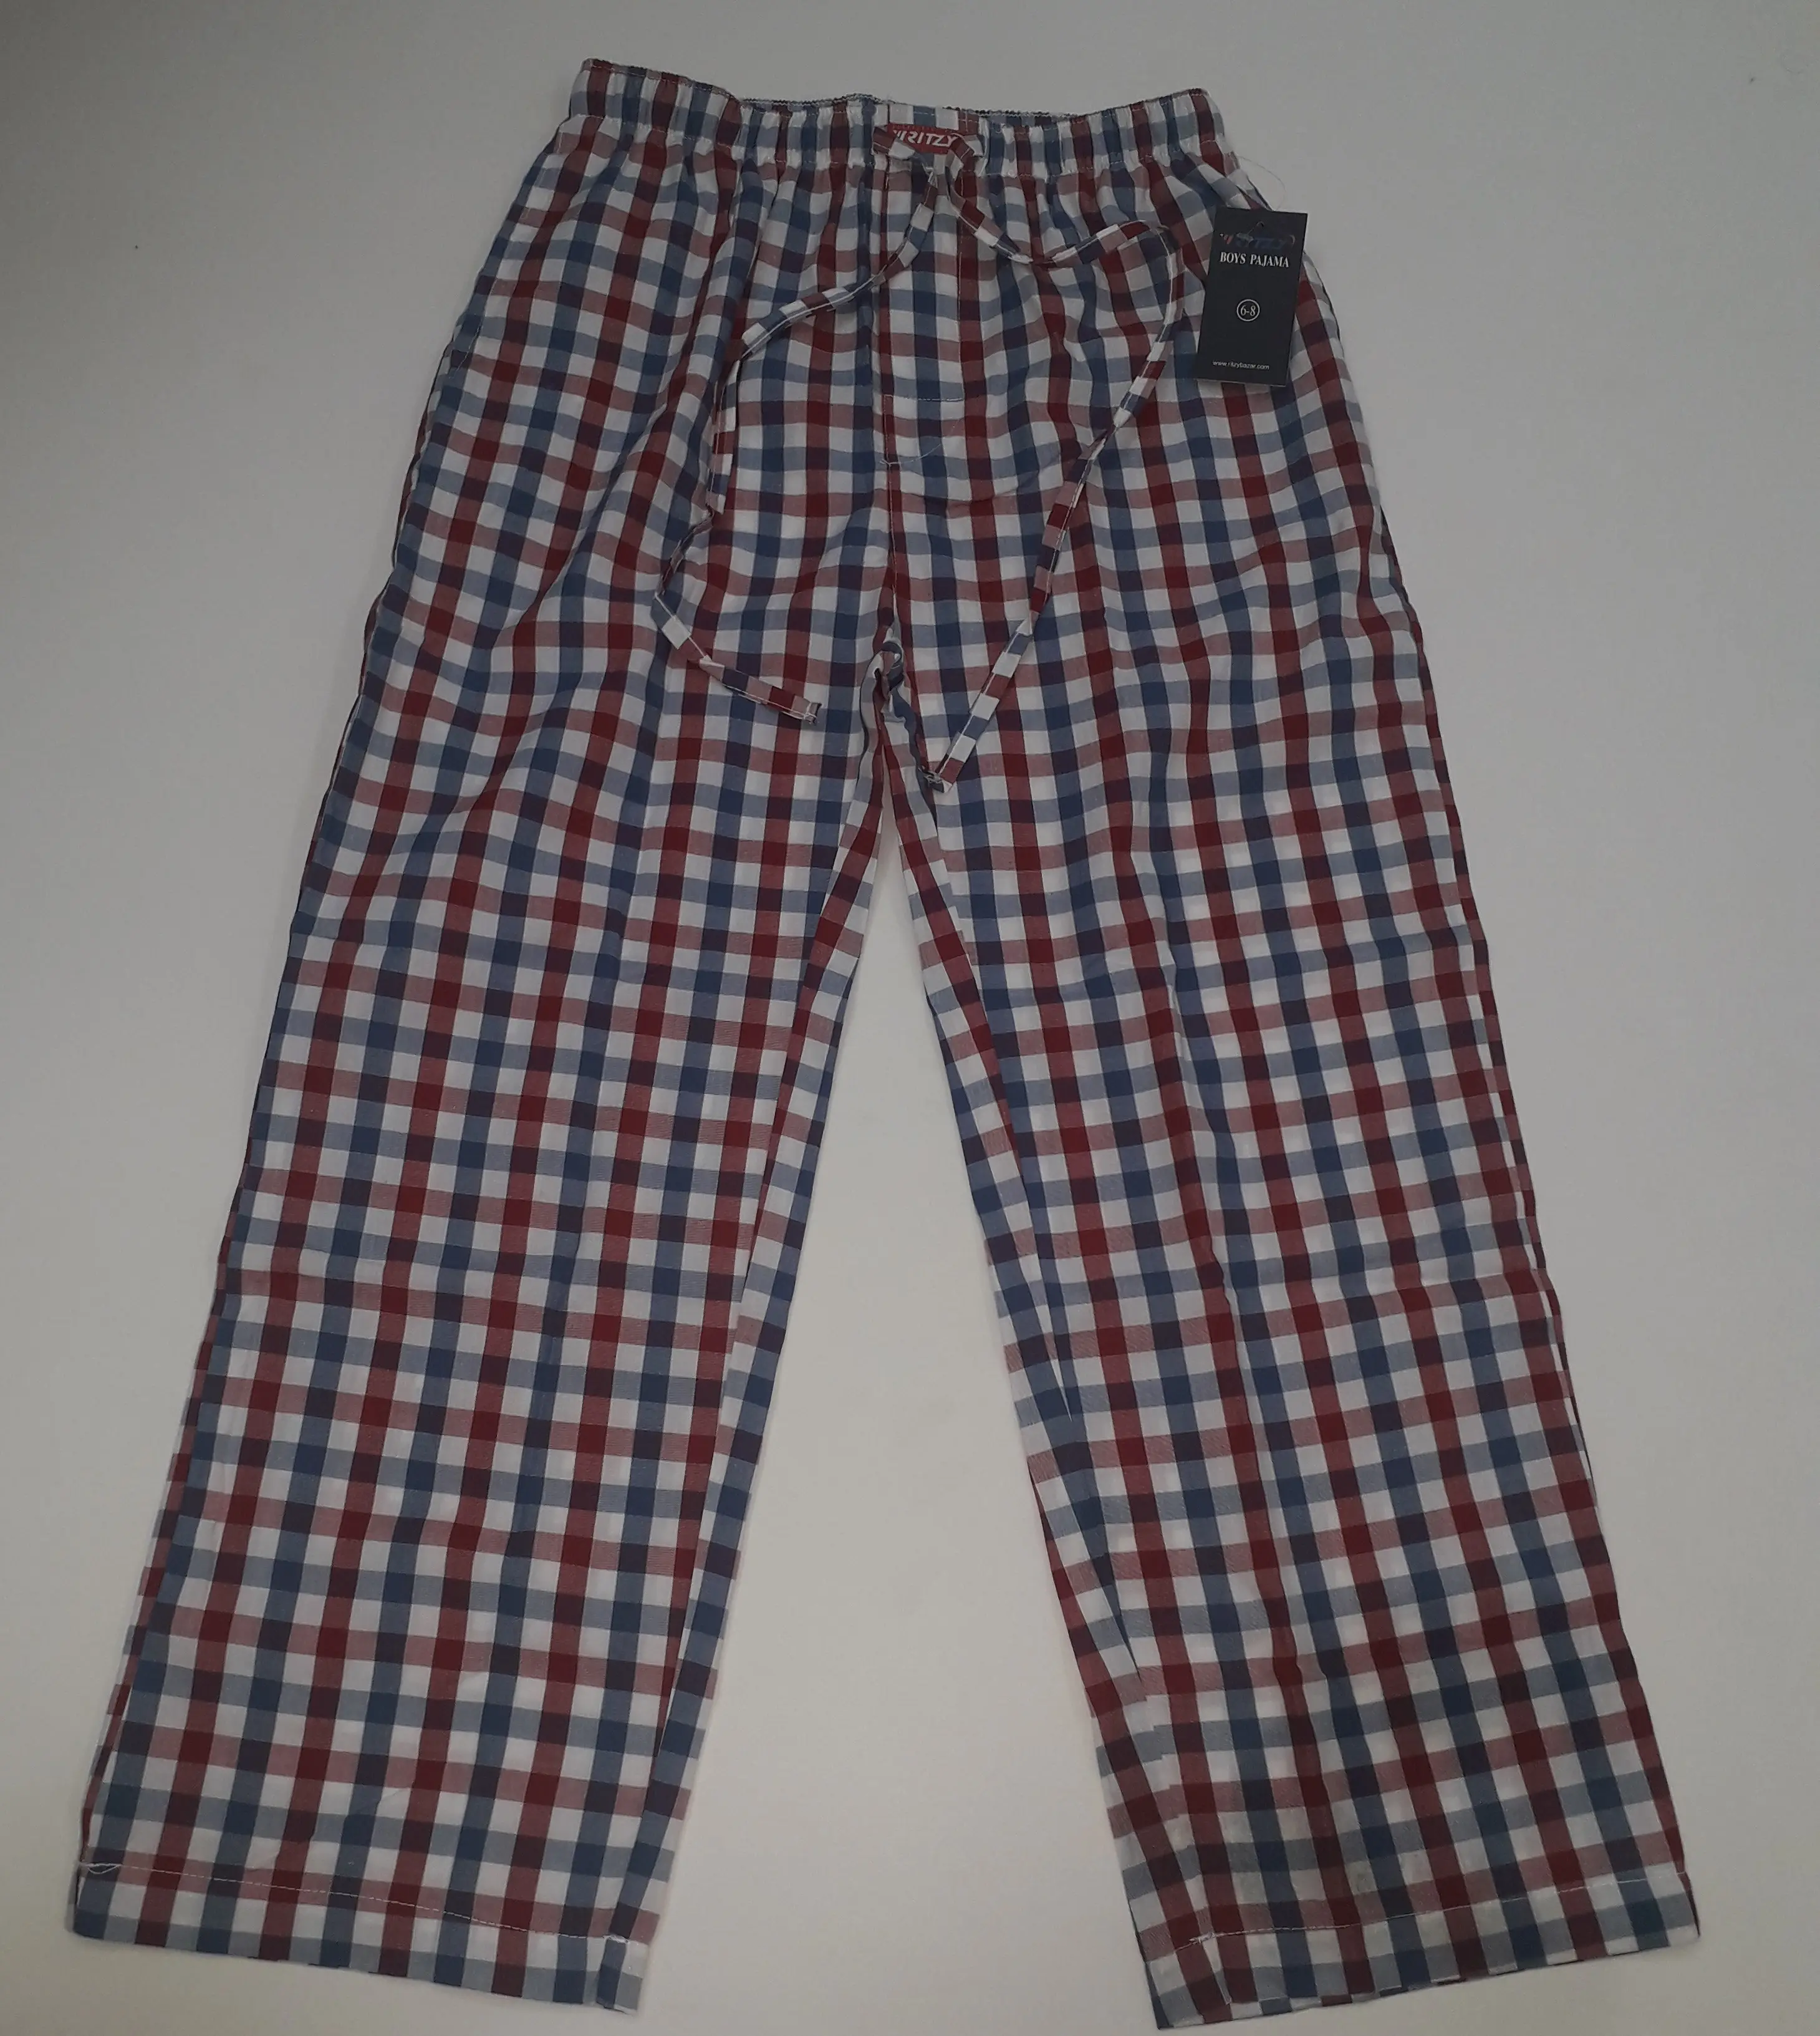 Made In Bangladesh OEM Boys Children Manufacturer Custom Design Pajama 100% Cotton Drawstring Long Woven Pajama Boys 4-14 Years